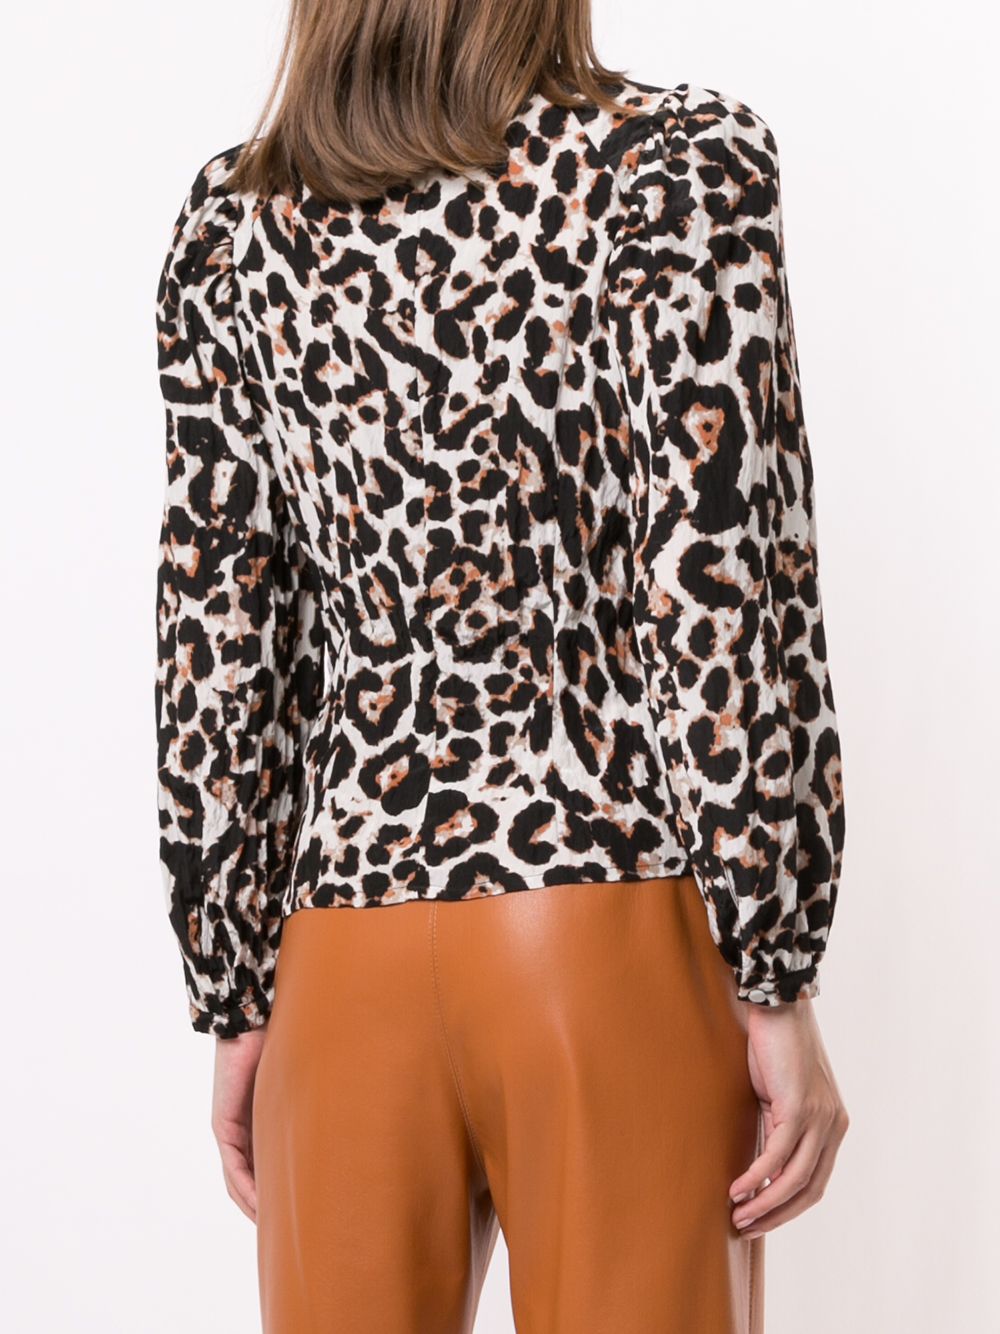 фото Baum und pferdgarten блузка с леопардовым принтом